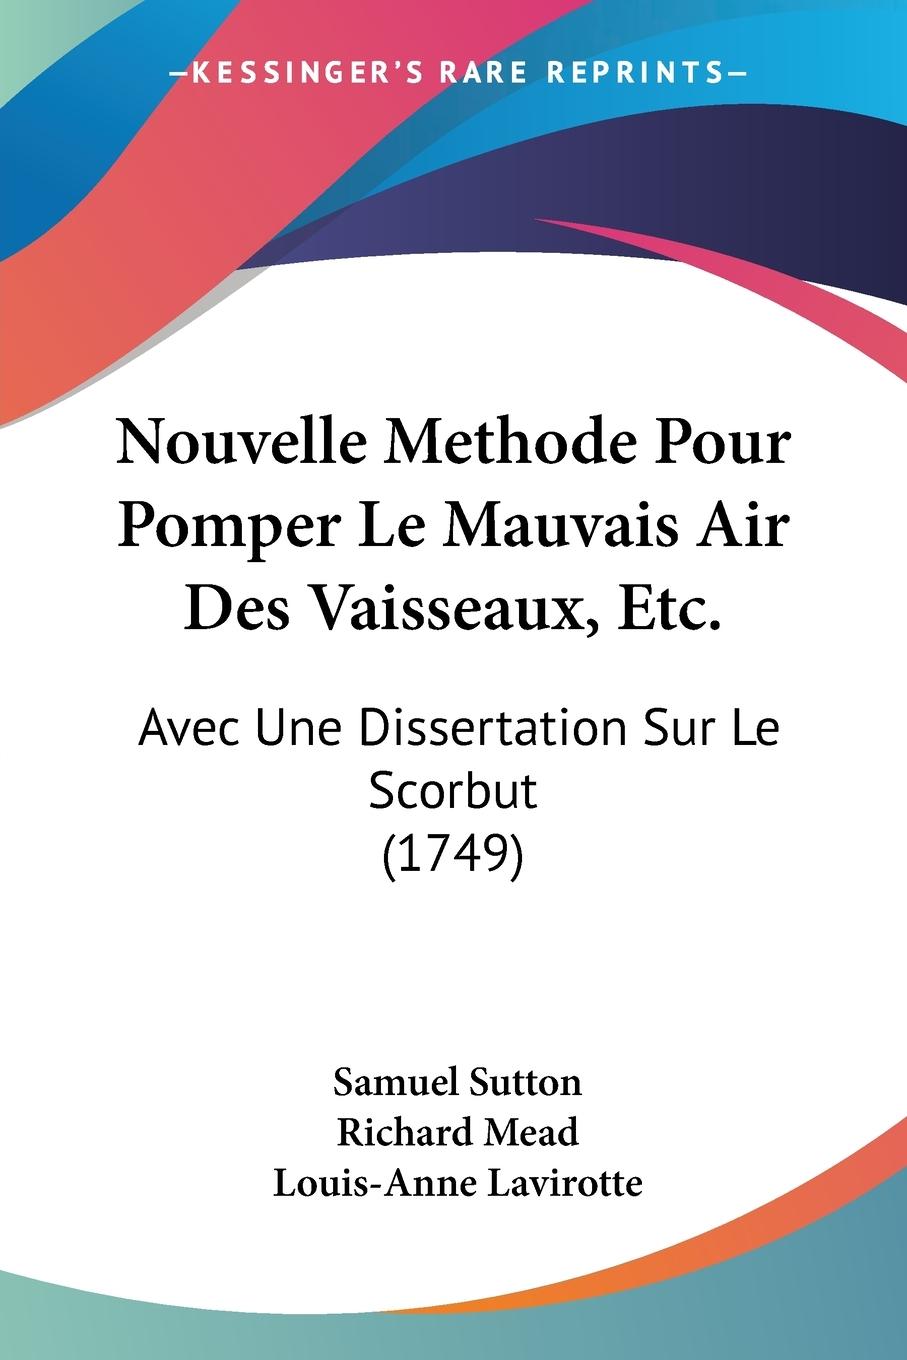 Nouvelle Methode Pour Pomper Le Mauvais Air Des Vaisseaux, Etc. - Sutton, Samuel Mead, Richard